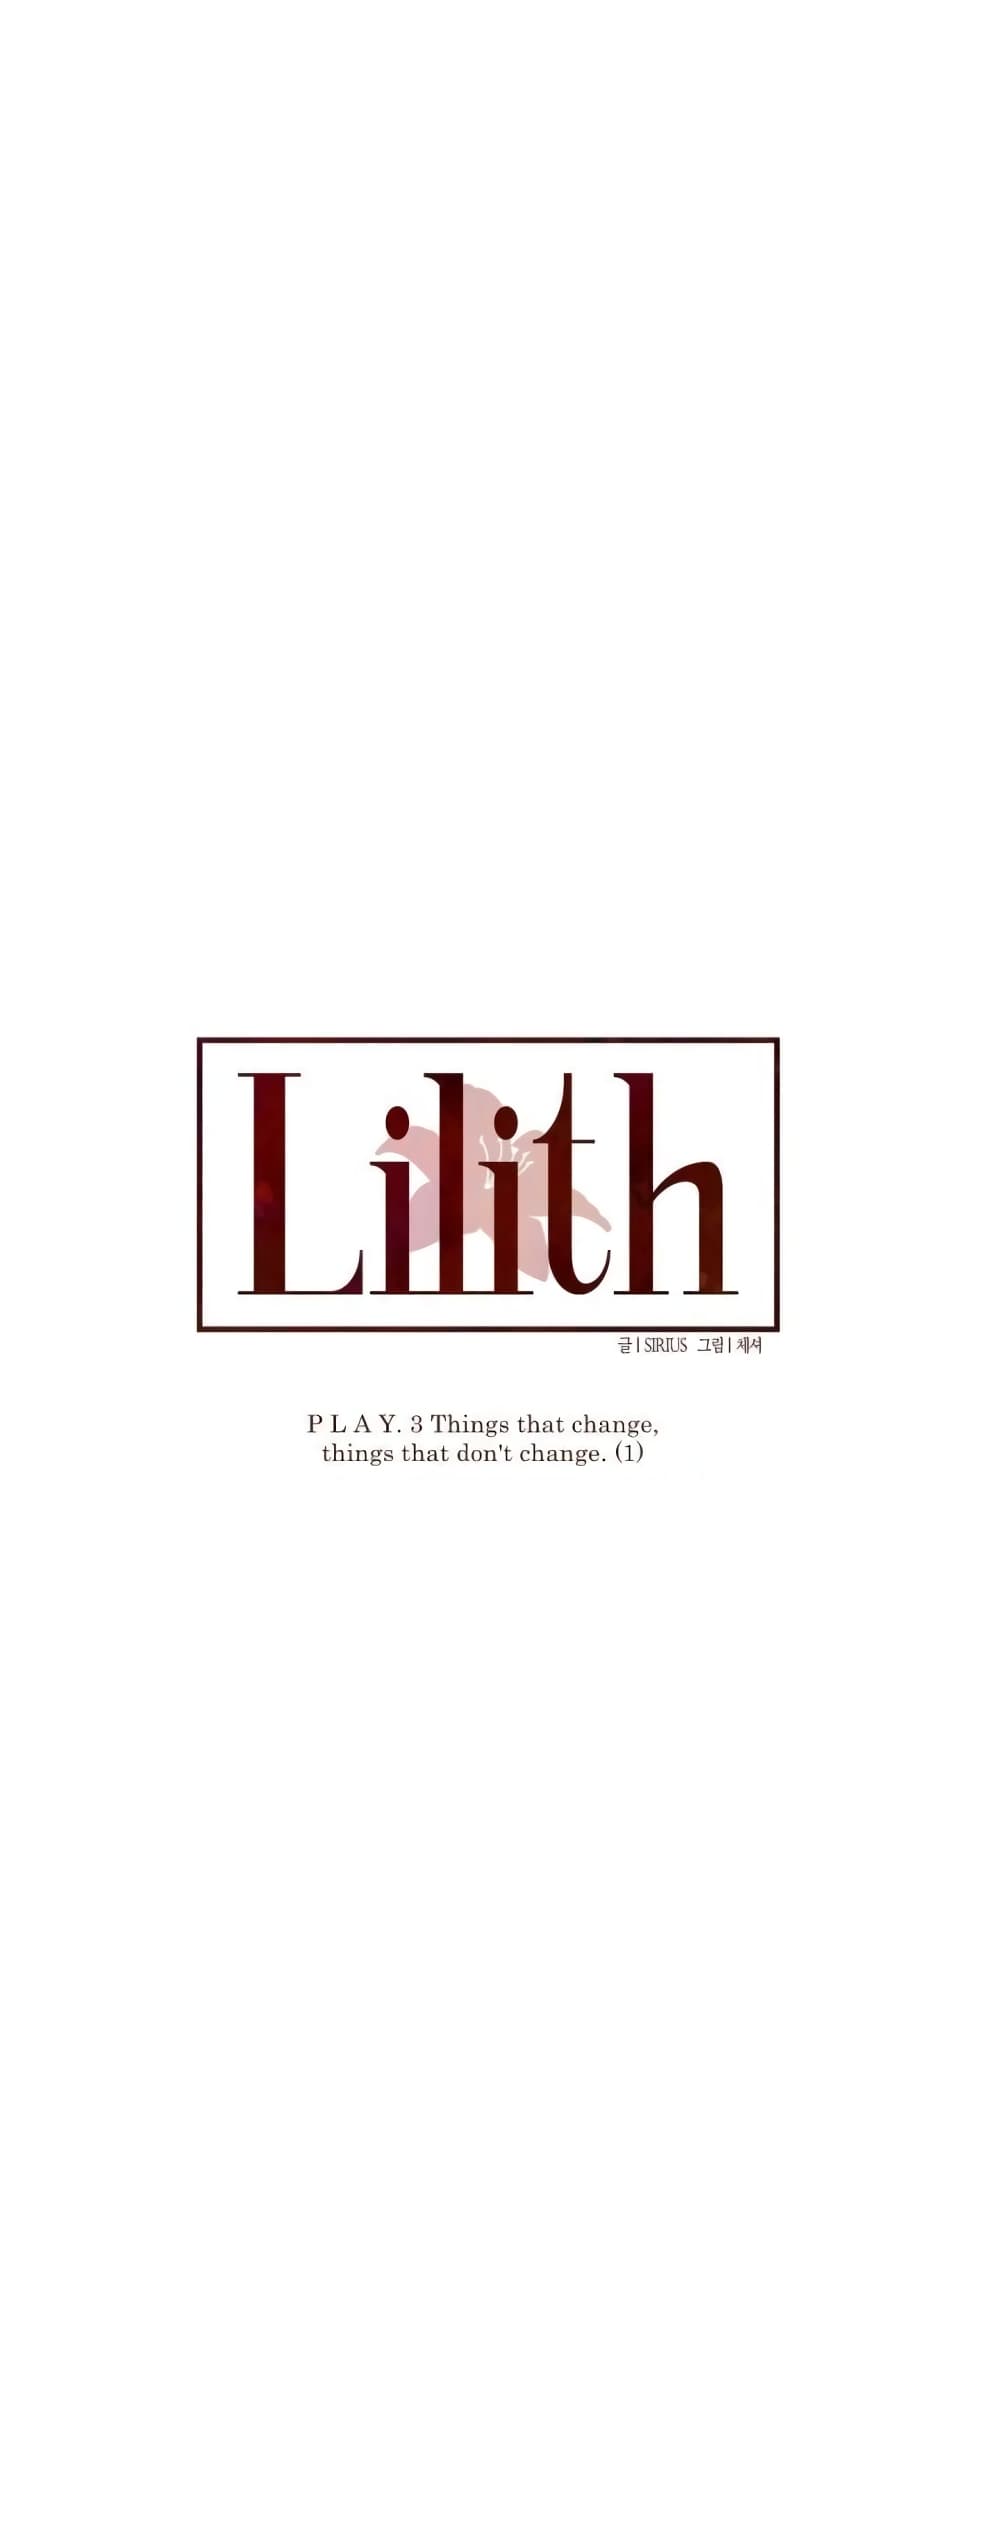 Lilith 17 07